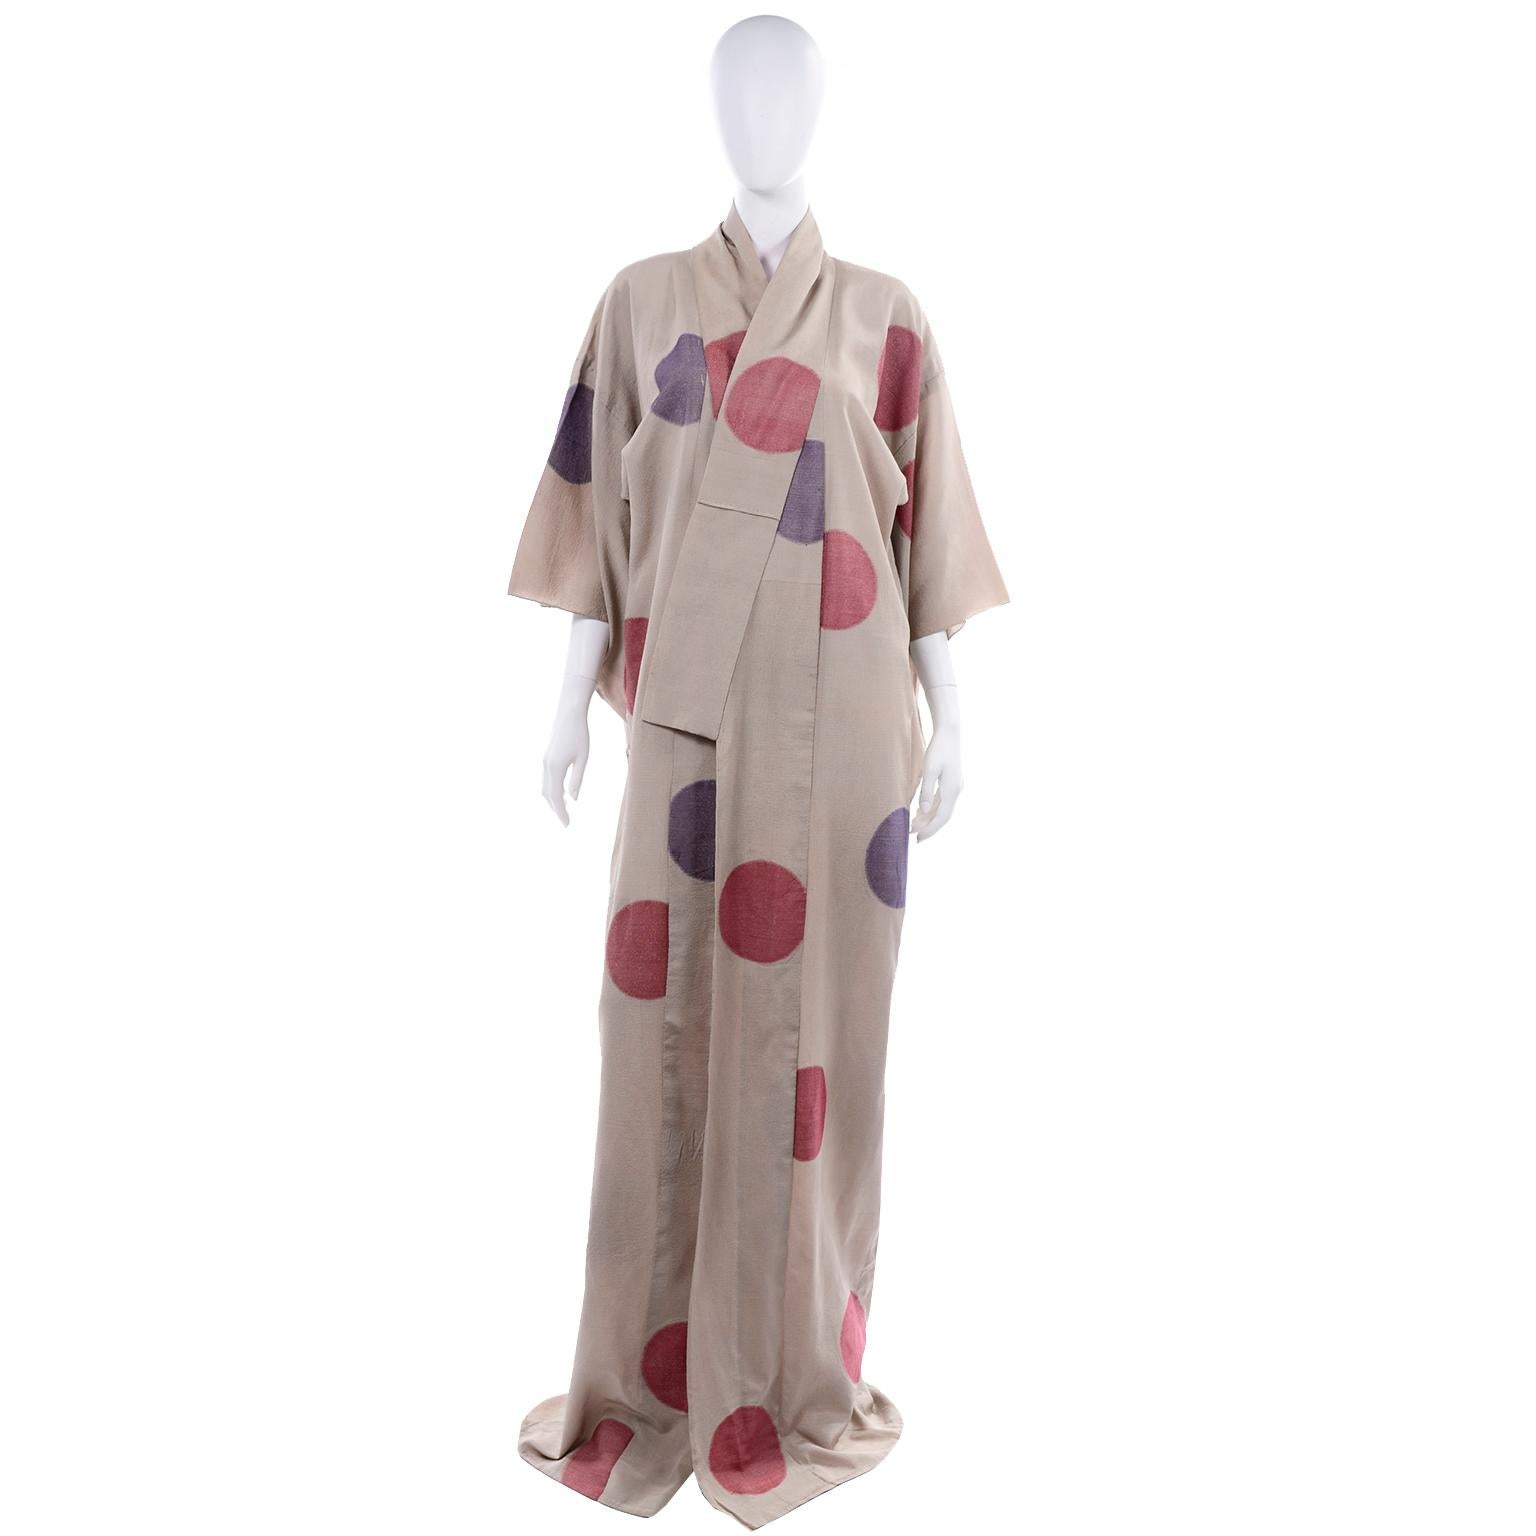 Wir lieben Vintage-Kimonos und dieser ist wirklich wunderschön! Diese  Der hellbraune Kimono ist mit roten und violetten Lamé-Kreisen oder -Punkten durchzogen. Dieser Kimono aus Rohseide ist oben am Kragen und an den Revers mit rosa Seide gefüttert.